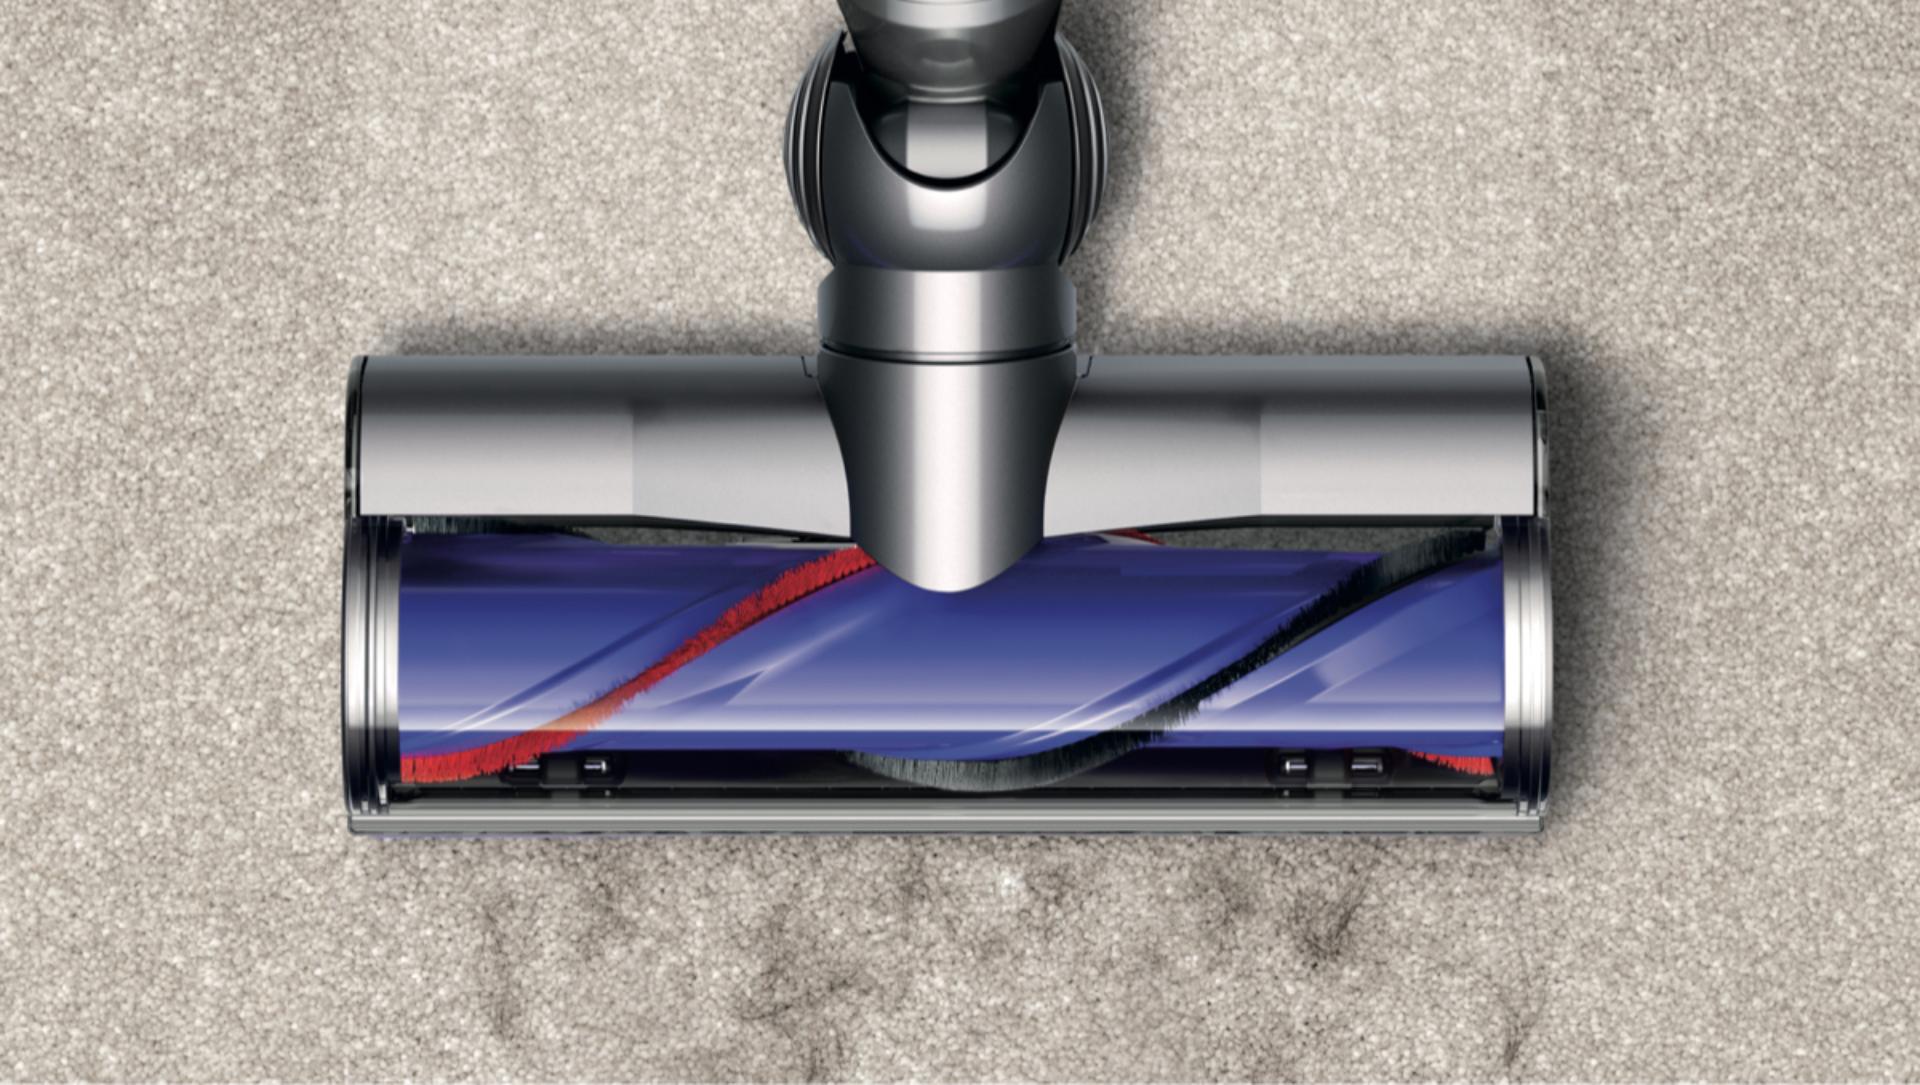 Podlahová hubica Motorbar™ vyťahuje prach z koberca